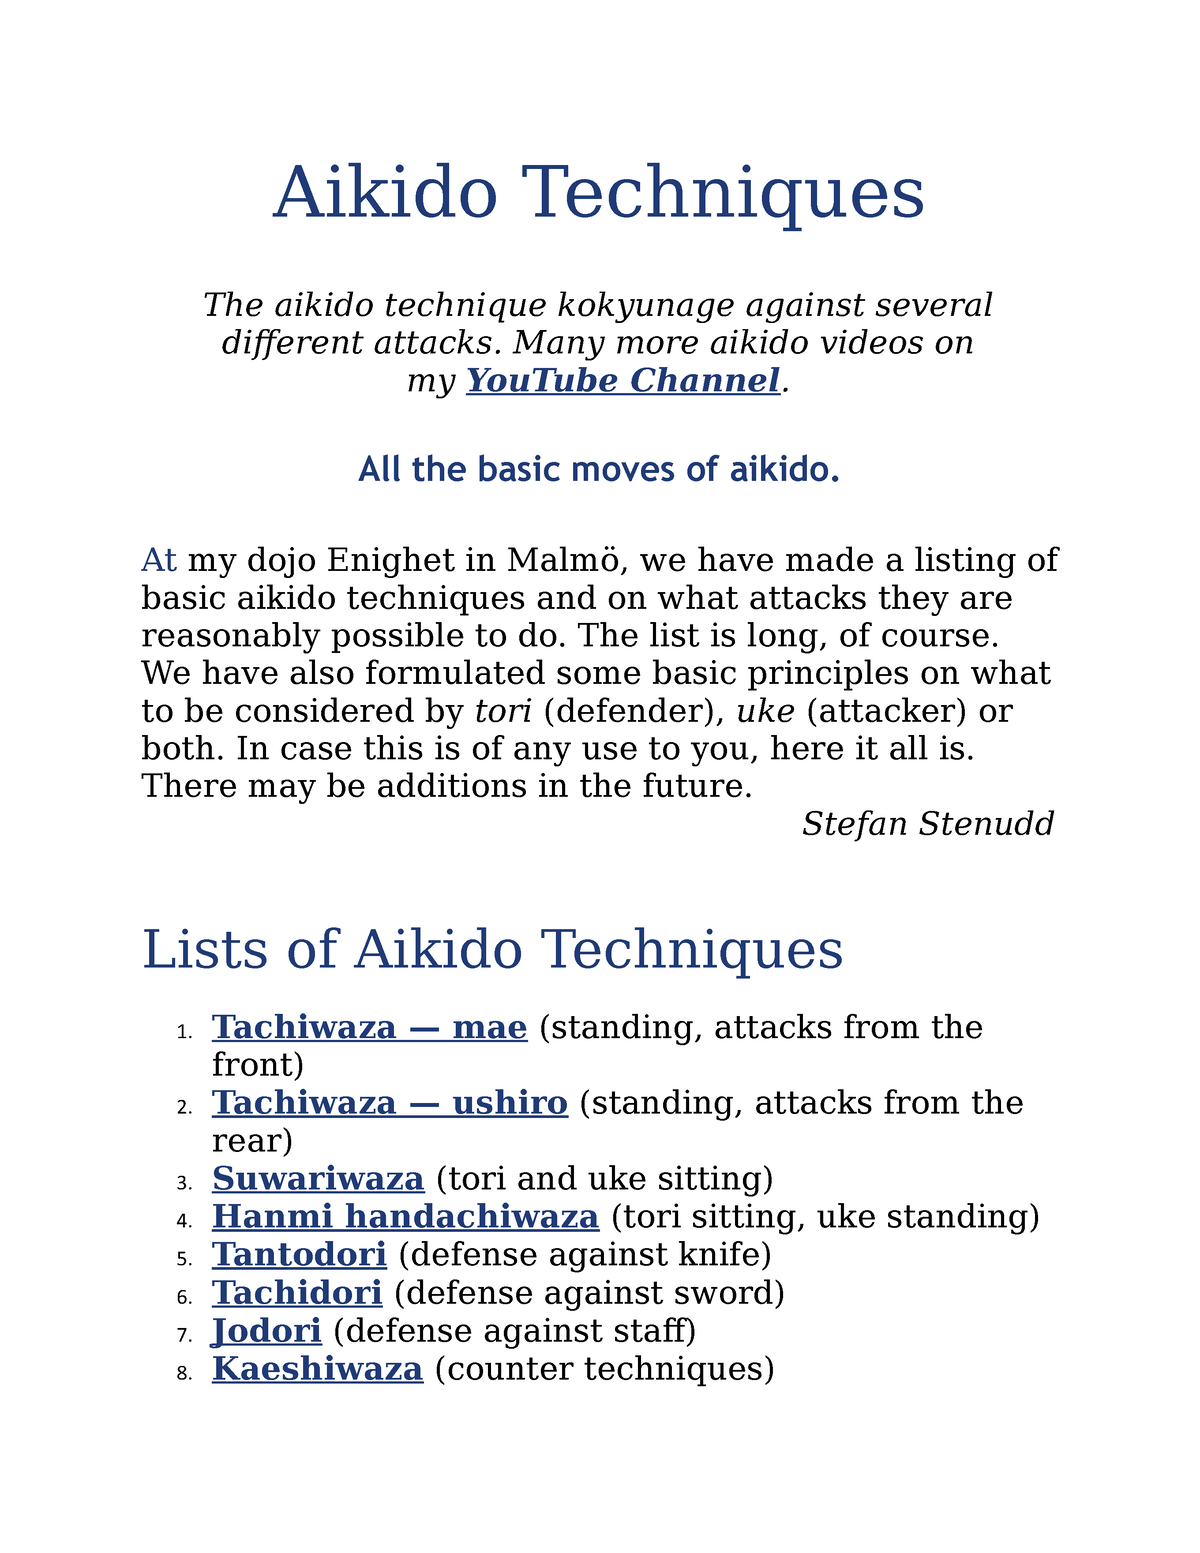 Tantodori — Aikido Knife Defense Techniques